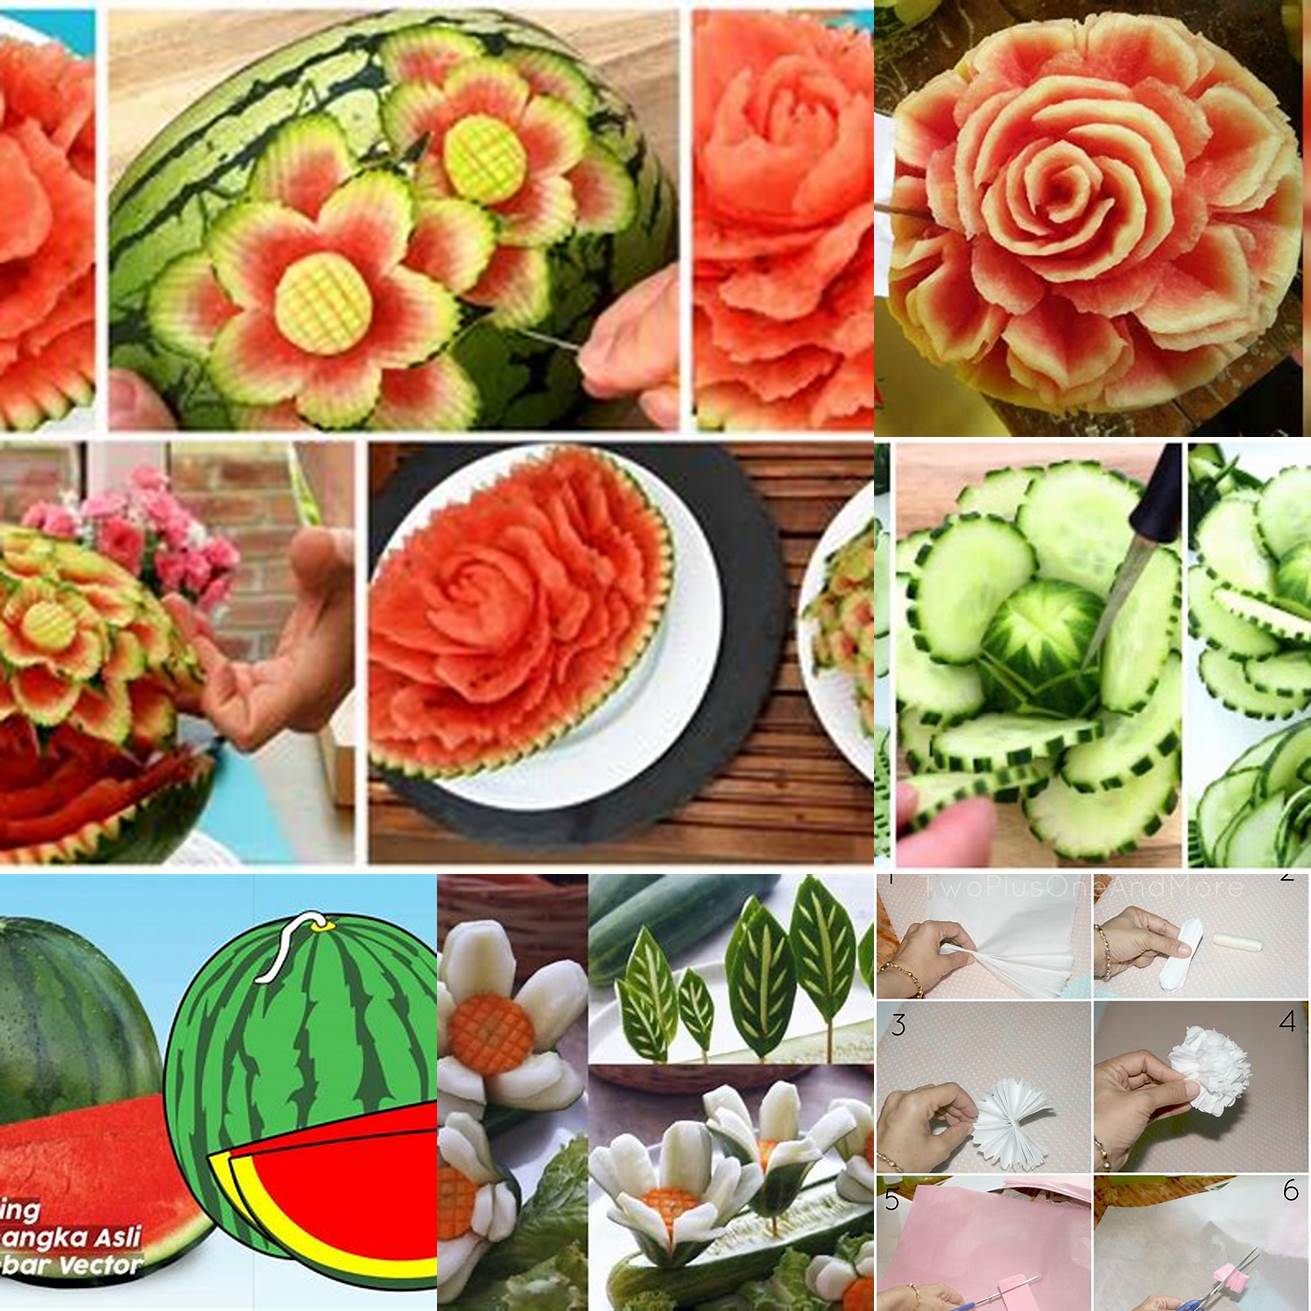 Buat semangka menjadi bentuk bunga